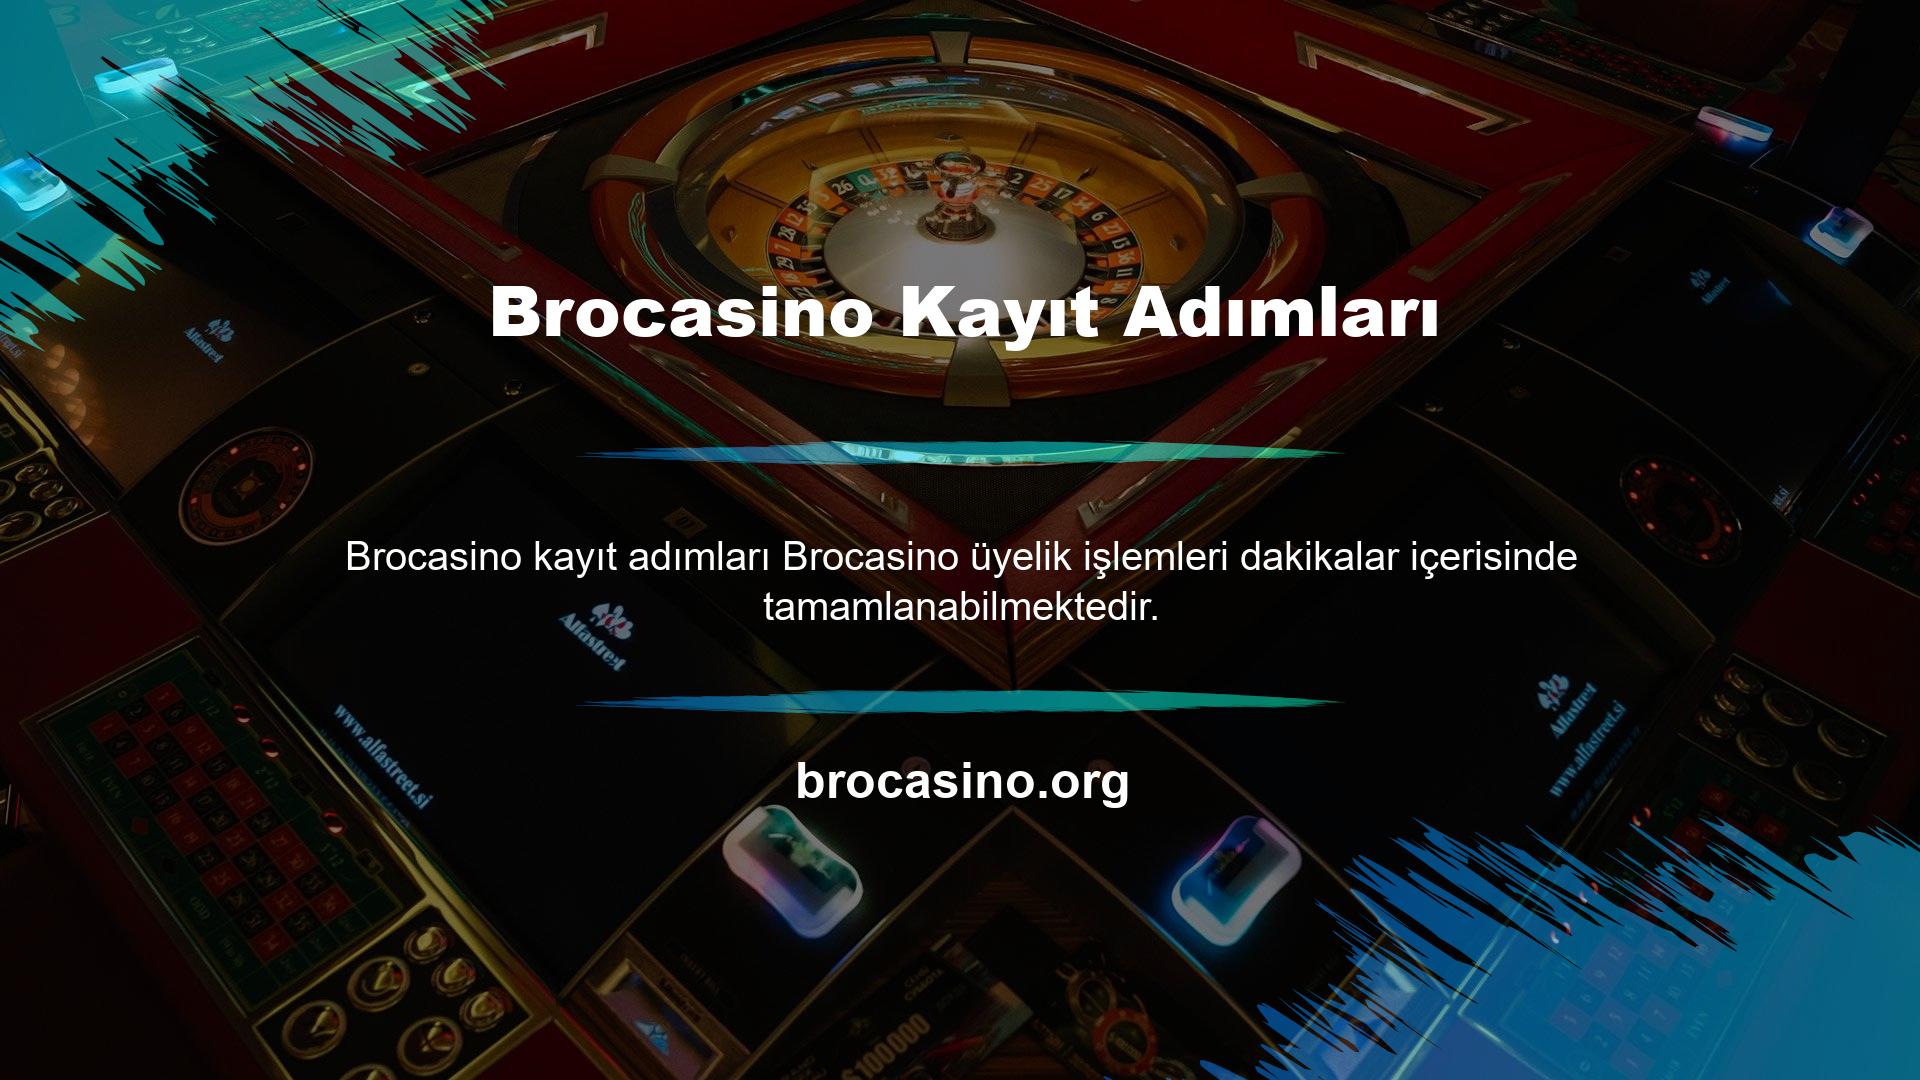 Brocasino resmi internet sitesine kayıt olduğunuzda "Kayıt" sekmesinden üyelik işlemini kolaylıkla tamamlayabilirsiniz